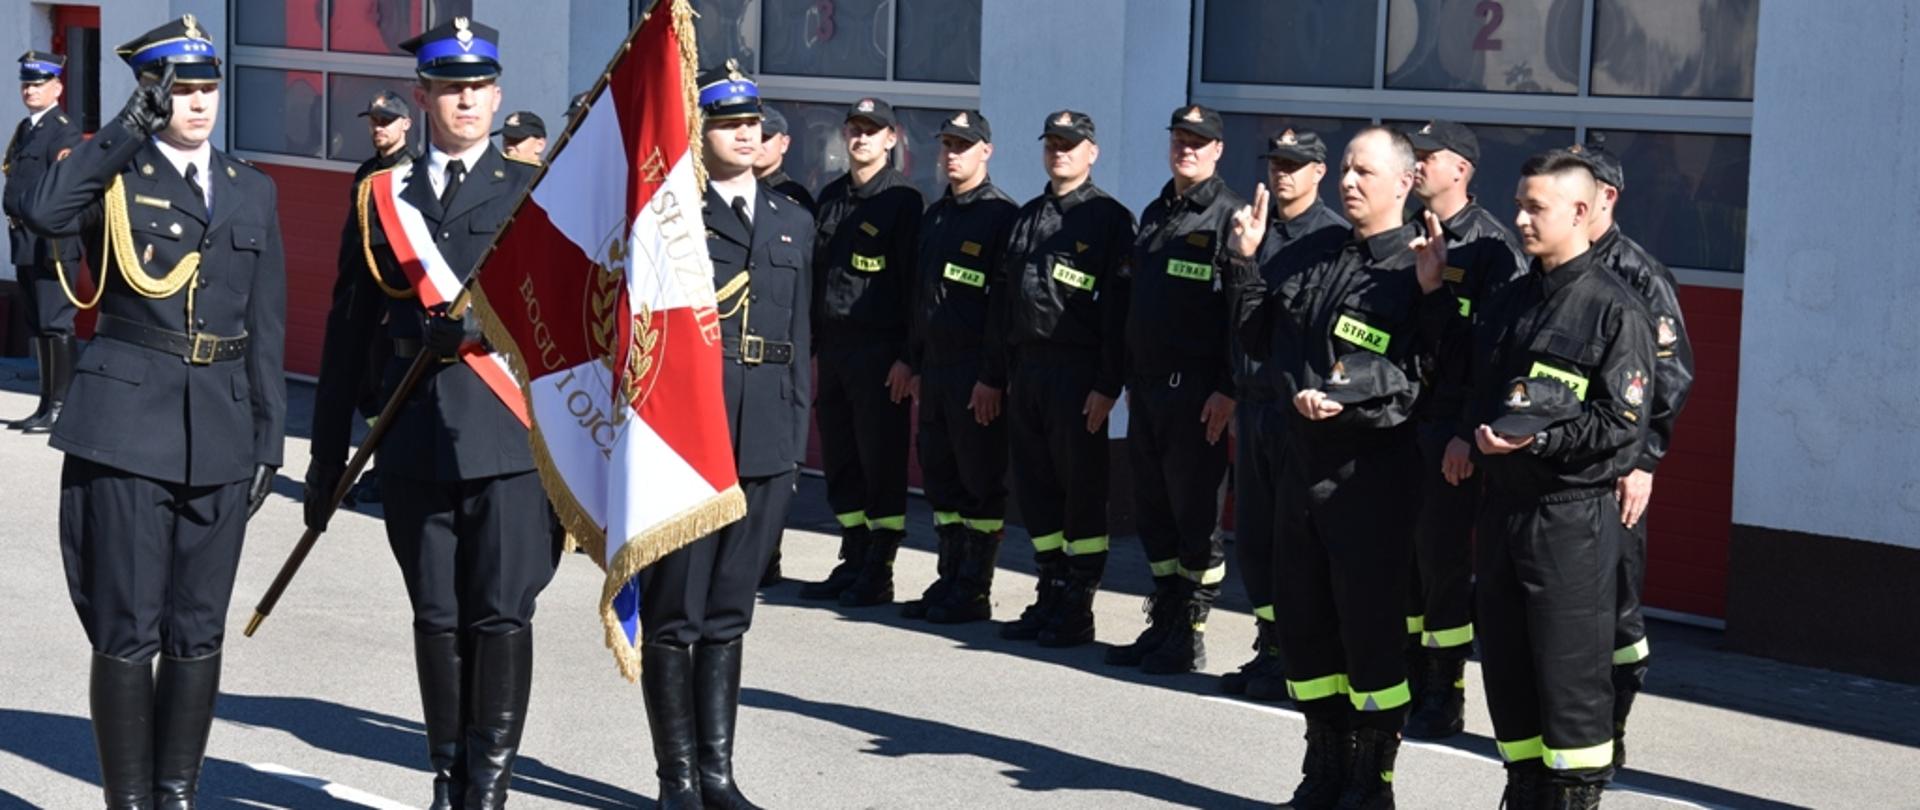 Strażacy składają ślubowanie na Sztandar Komendy Powiatowej P{SP w Ostródzie.